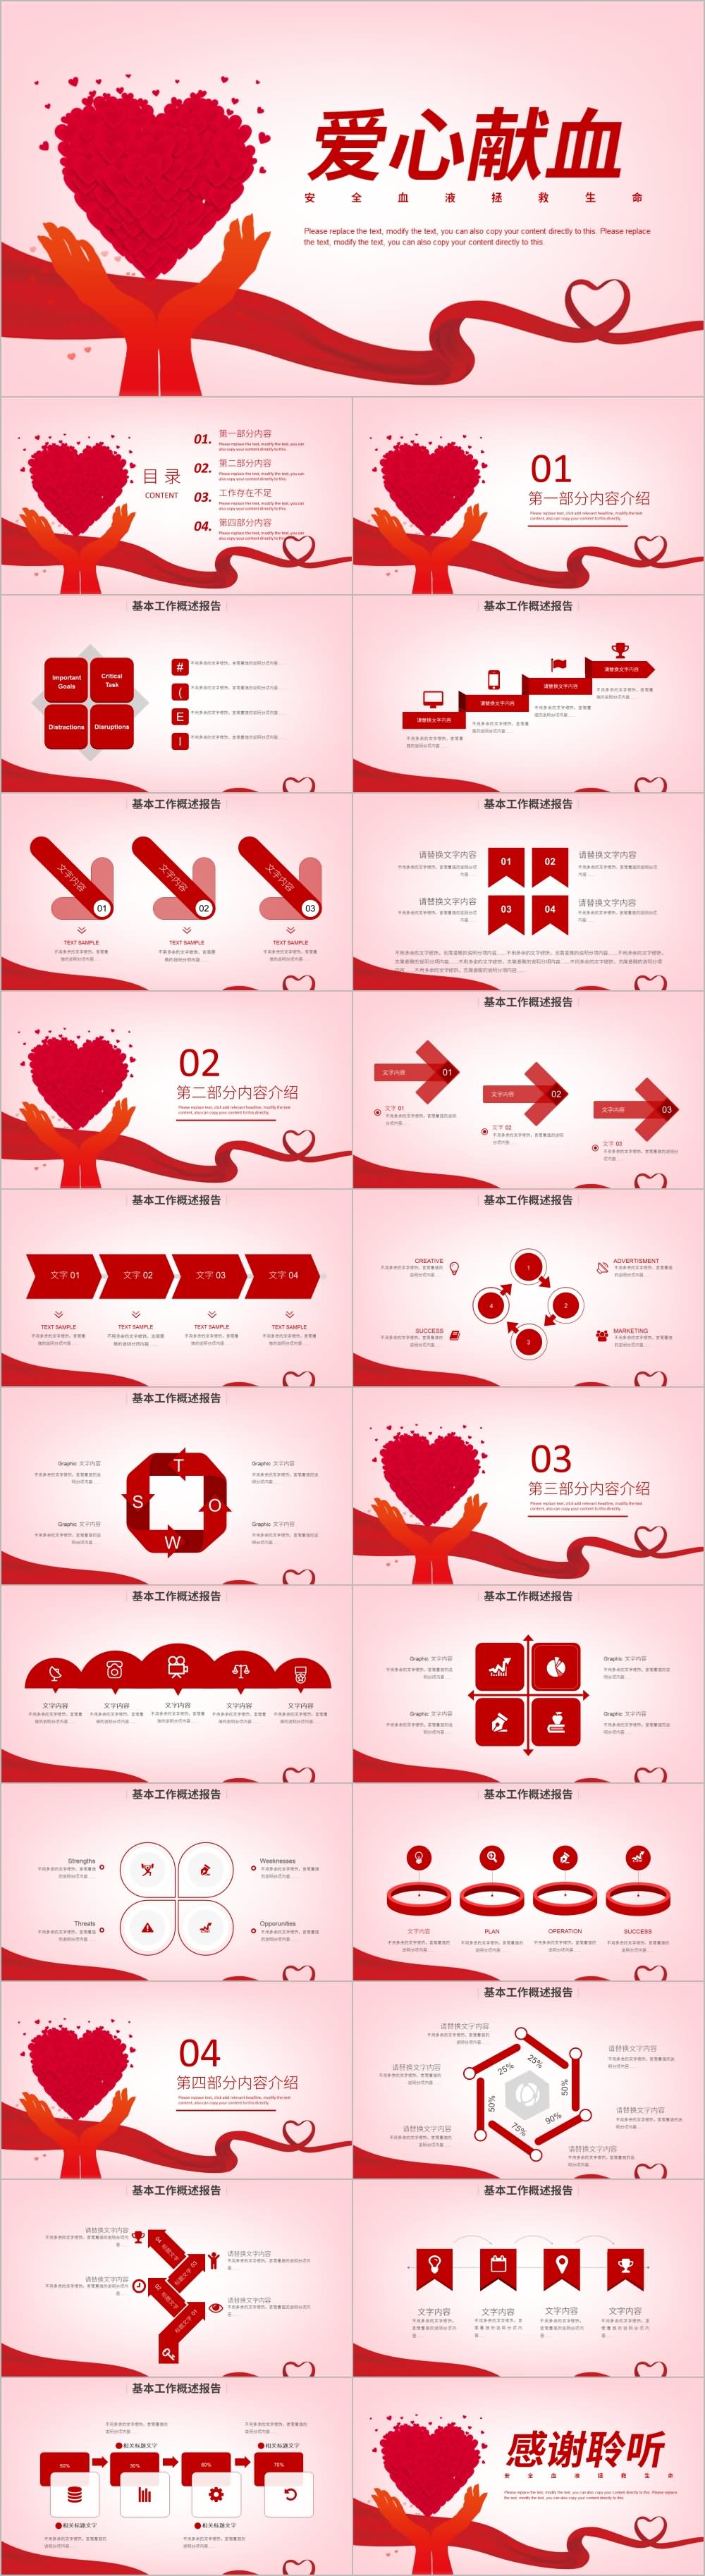 世界献血者日公益爱心无偿献血PPT模板